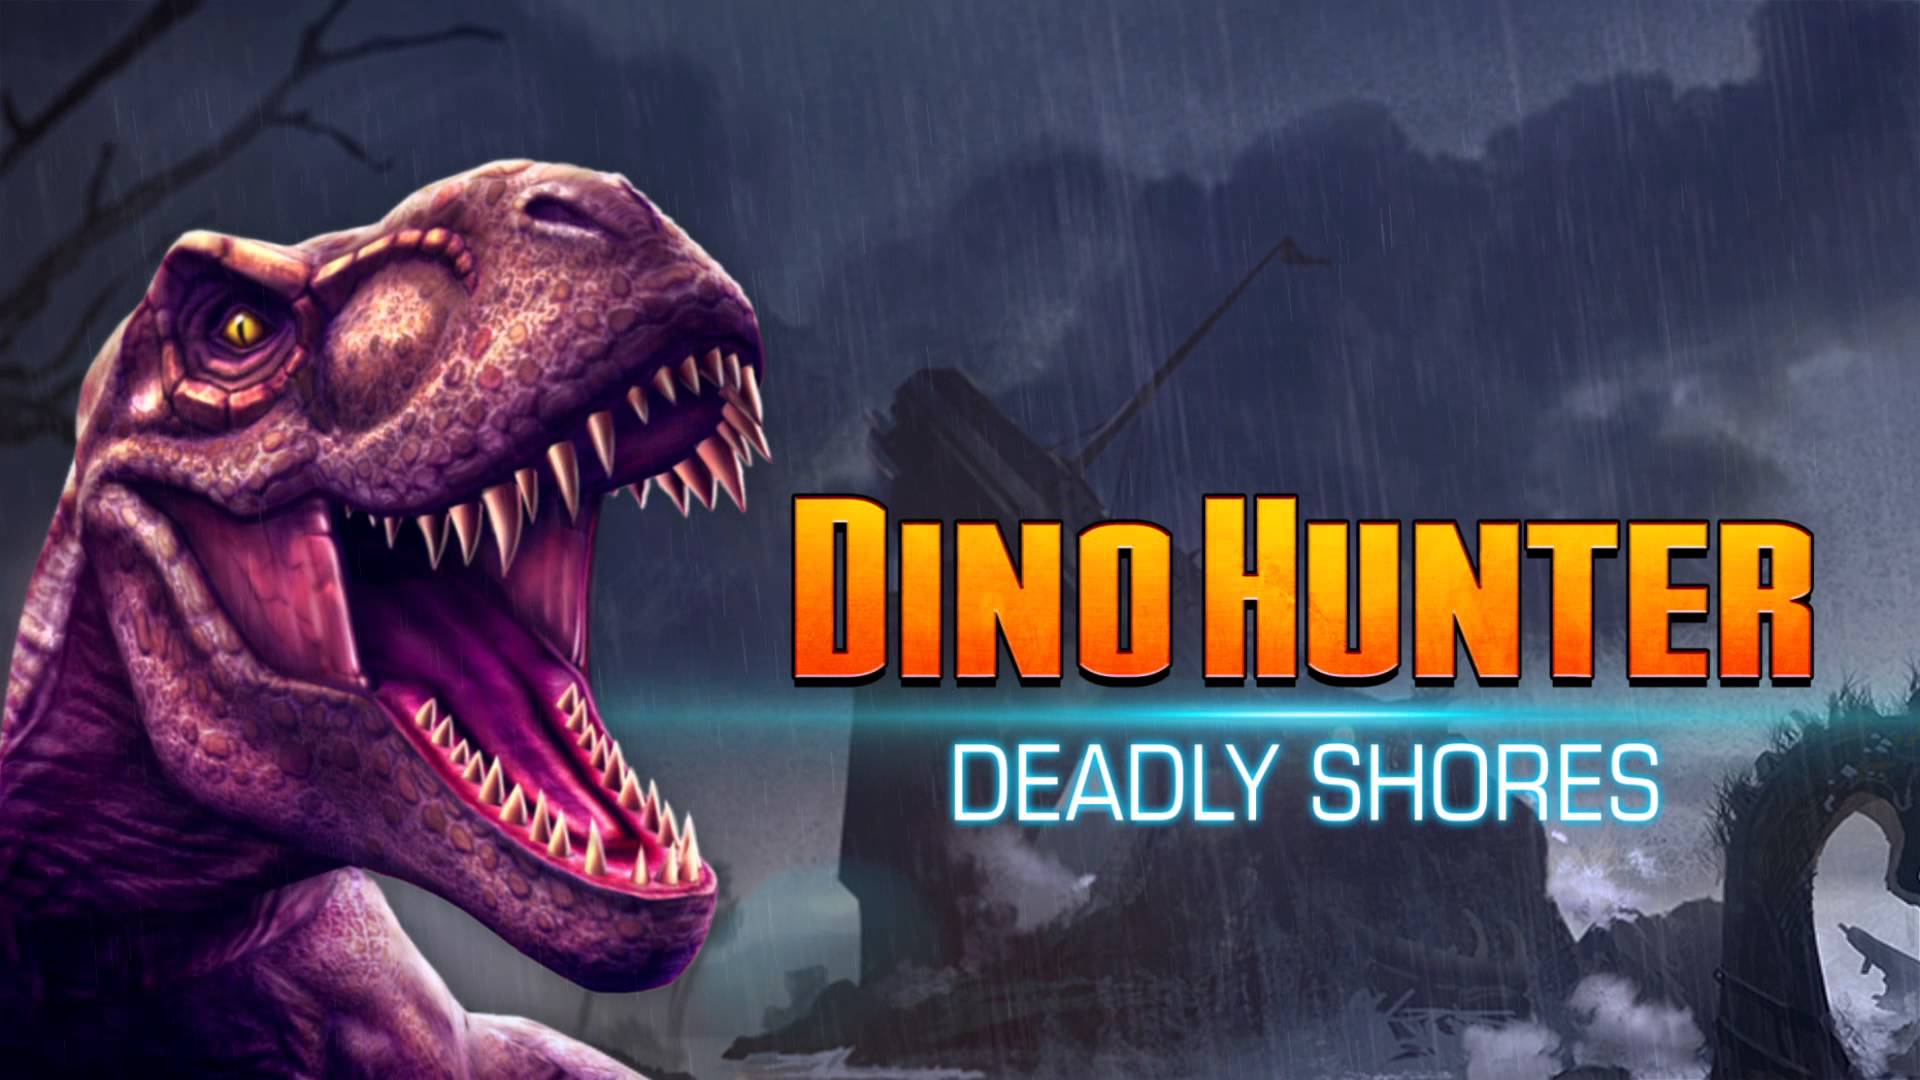 dino hunter deadly shores games